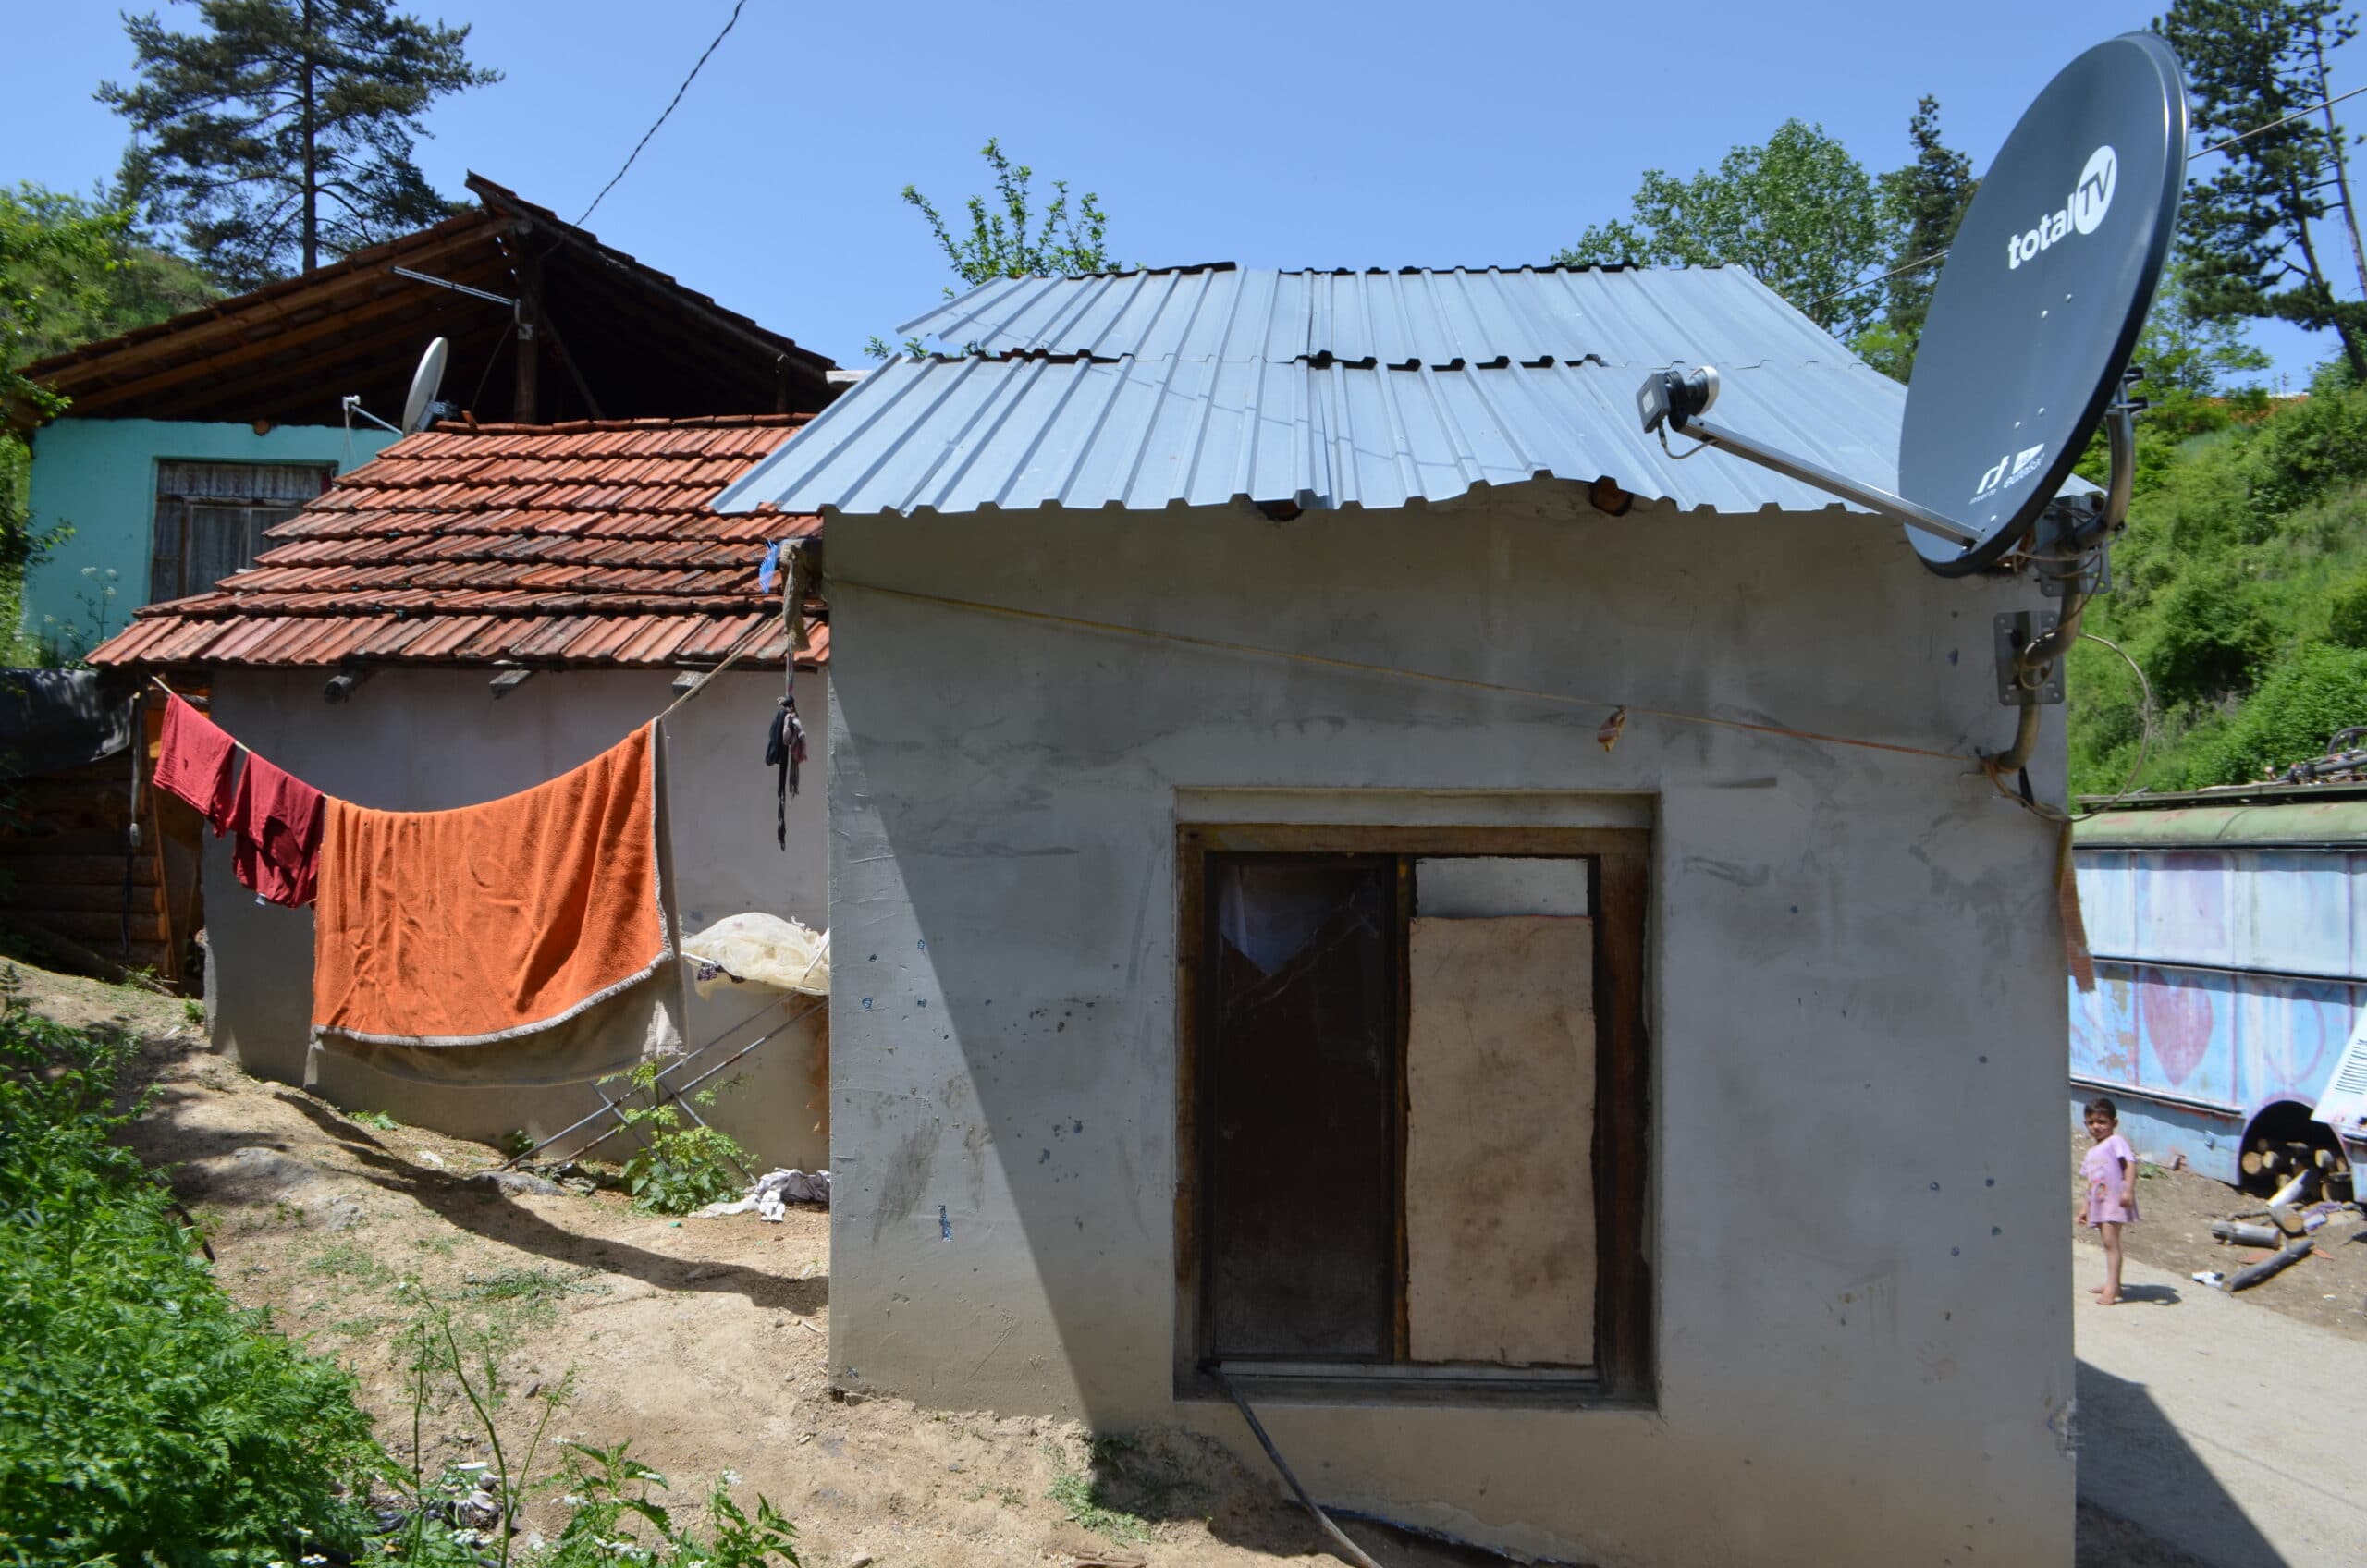 "Da me hoće Gospod pa da umrem, da se ne mučim više": Život u bedi meštana Laloša, nedaleko od Bosilegrada, najvećem getu u Srbiji 7